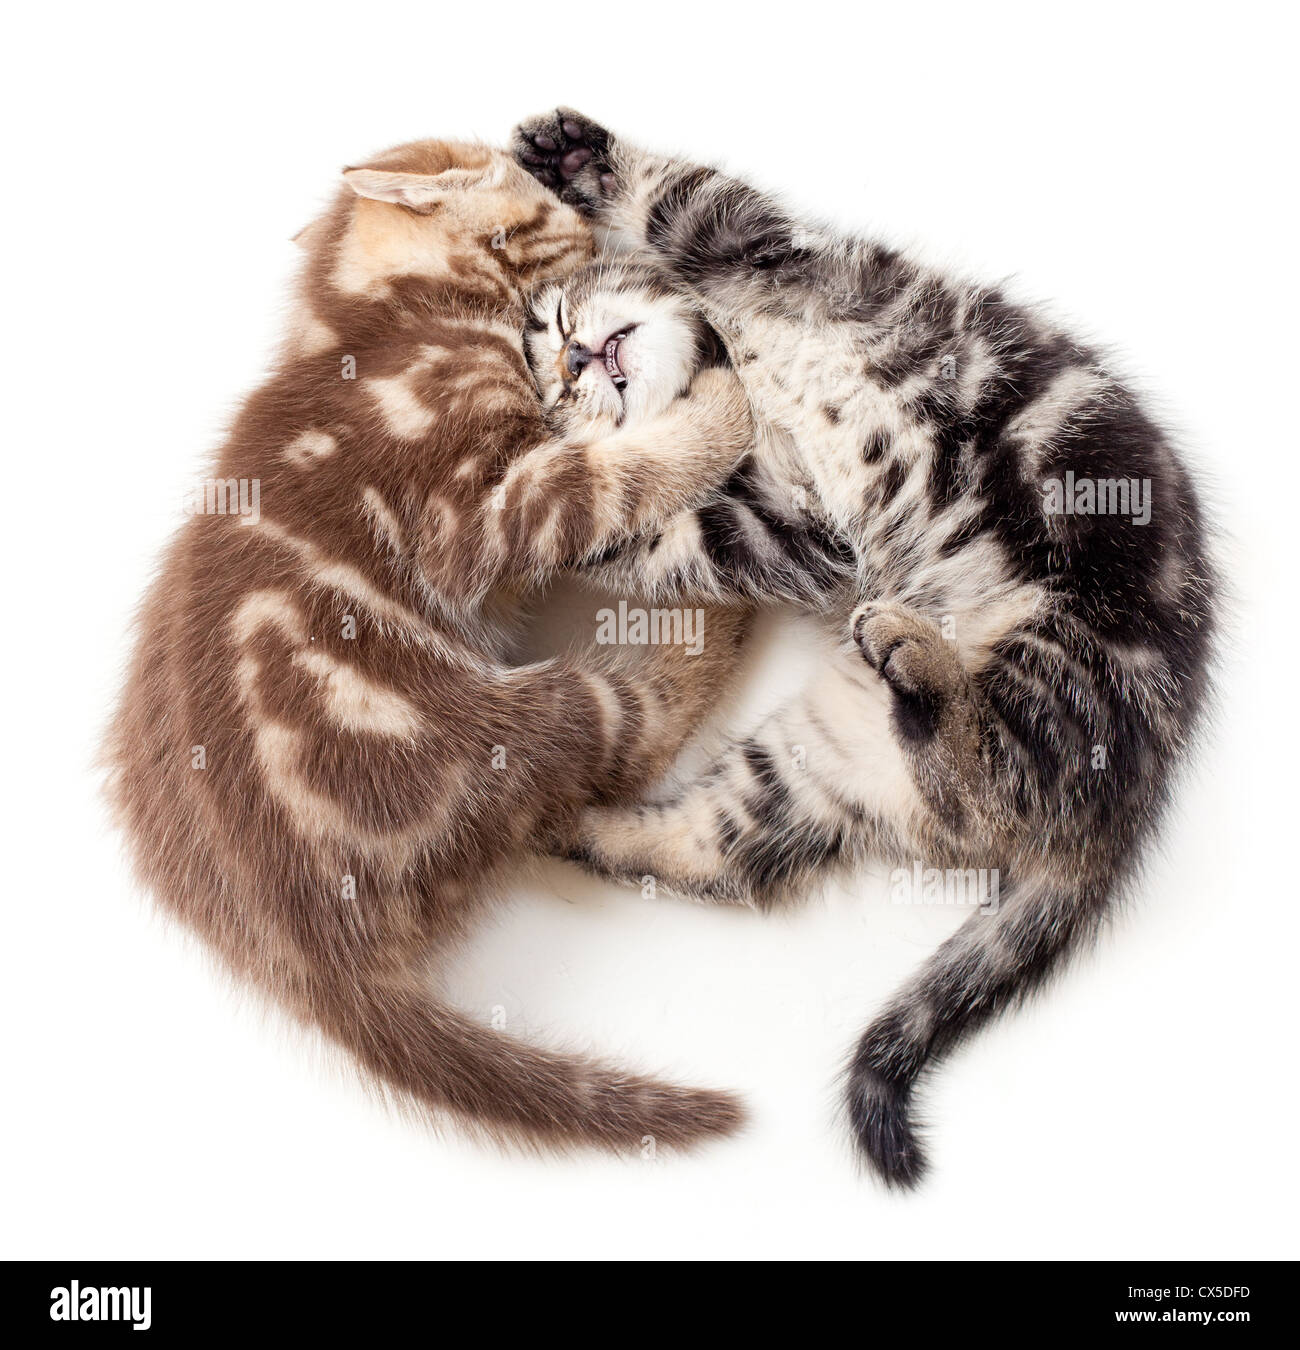 zwei Kätzchen kämpfen, Ansicht von oben Stockfoto